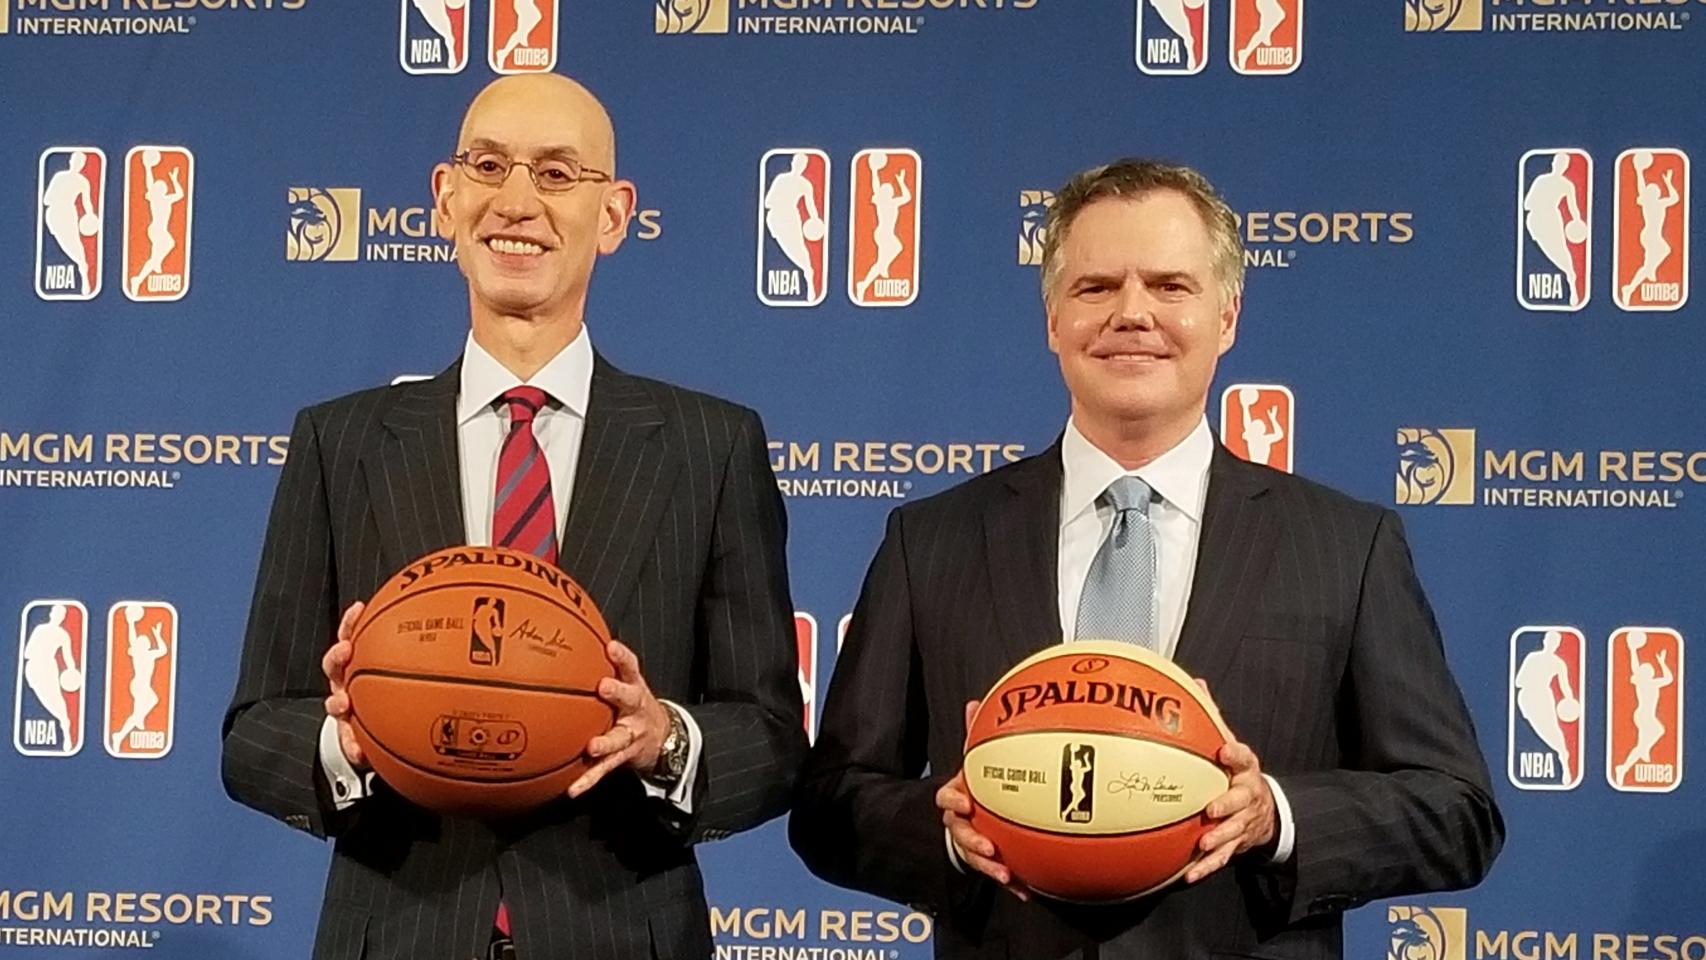 El comisionado de la NBA, Adam Silver, y el gerente general de MGM Resorts International, Jim Murren, posan en una conferencia de prensa